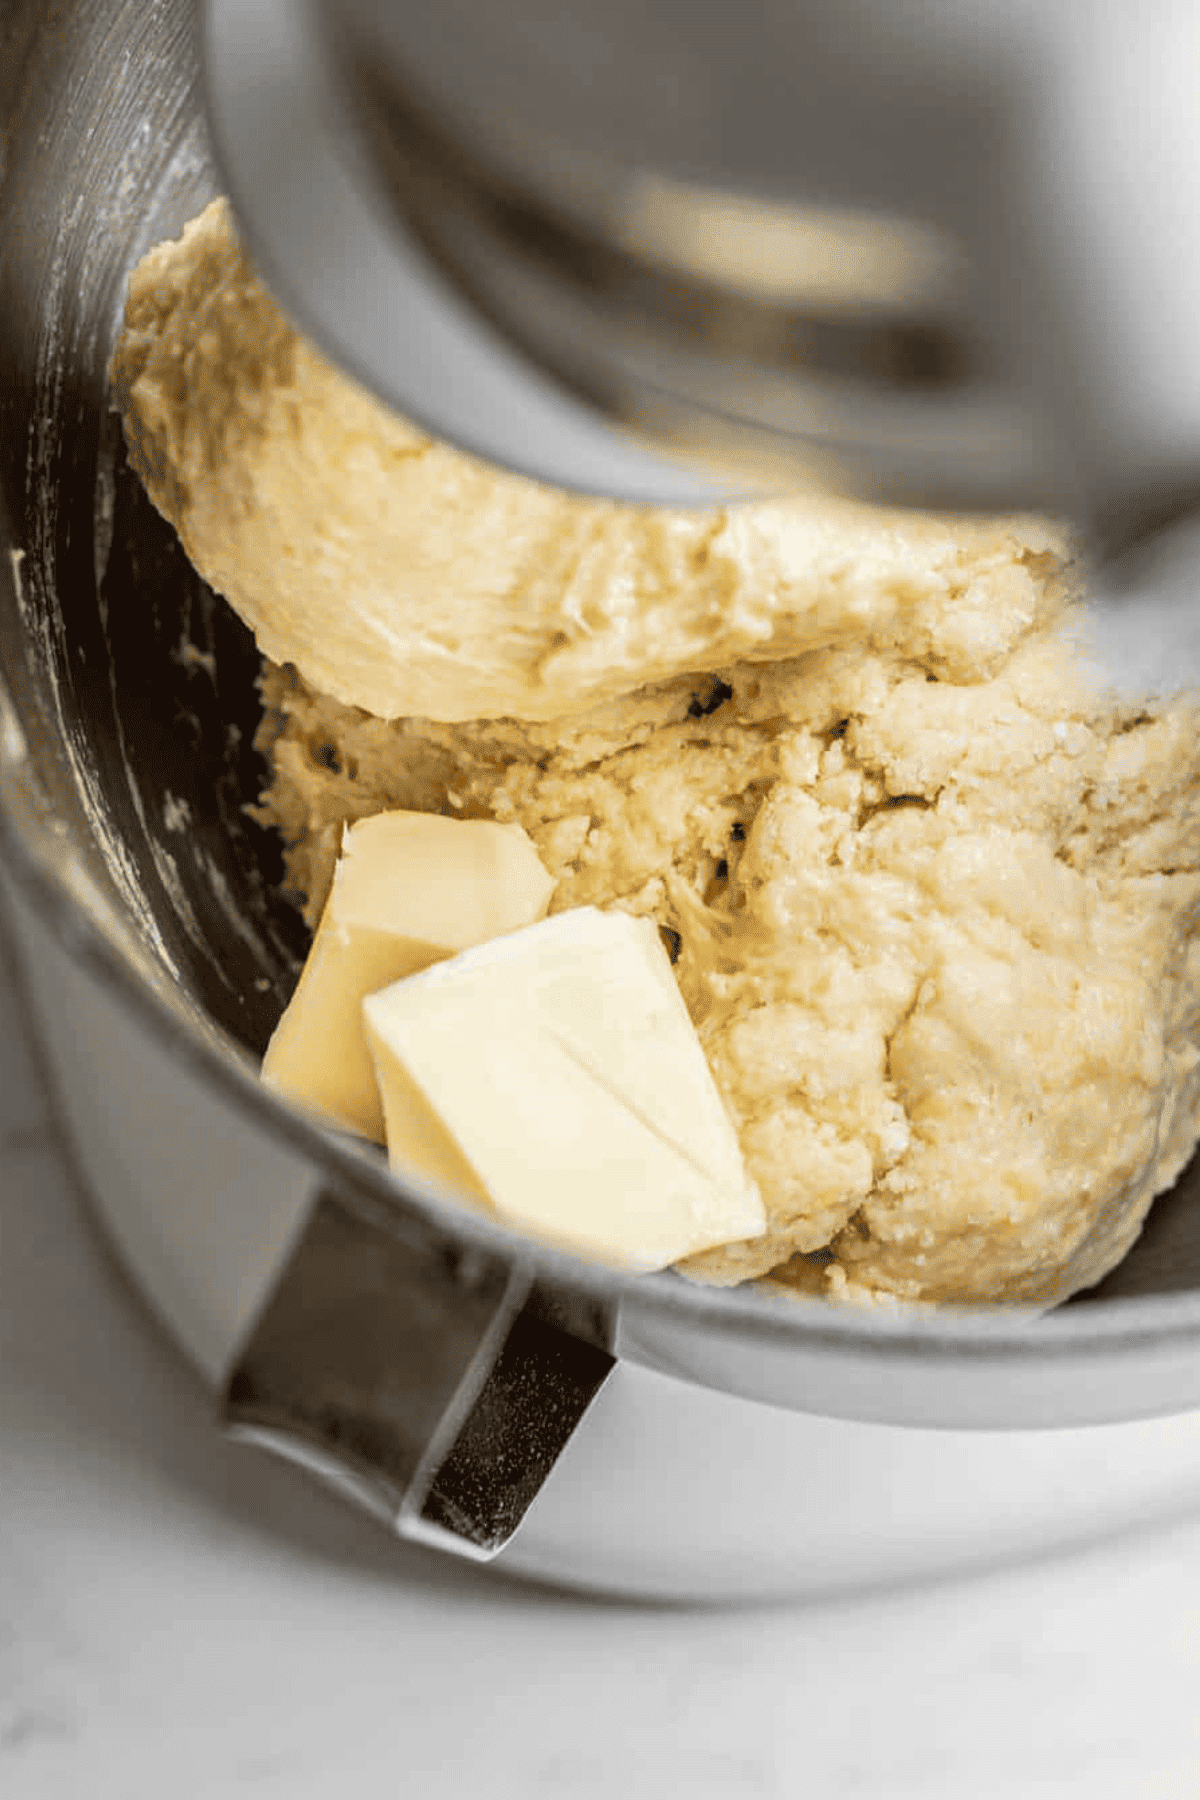 butter cubes on dough.